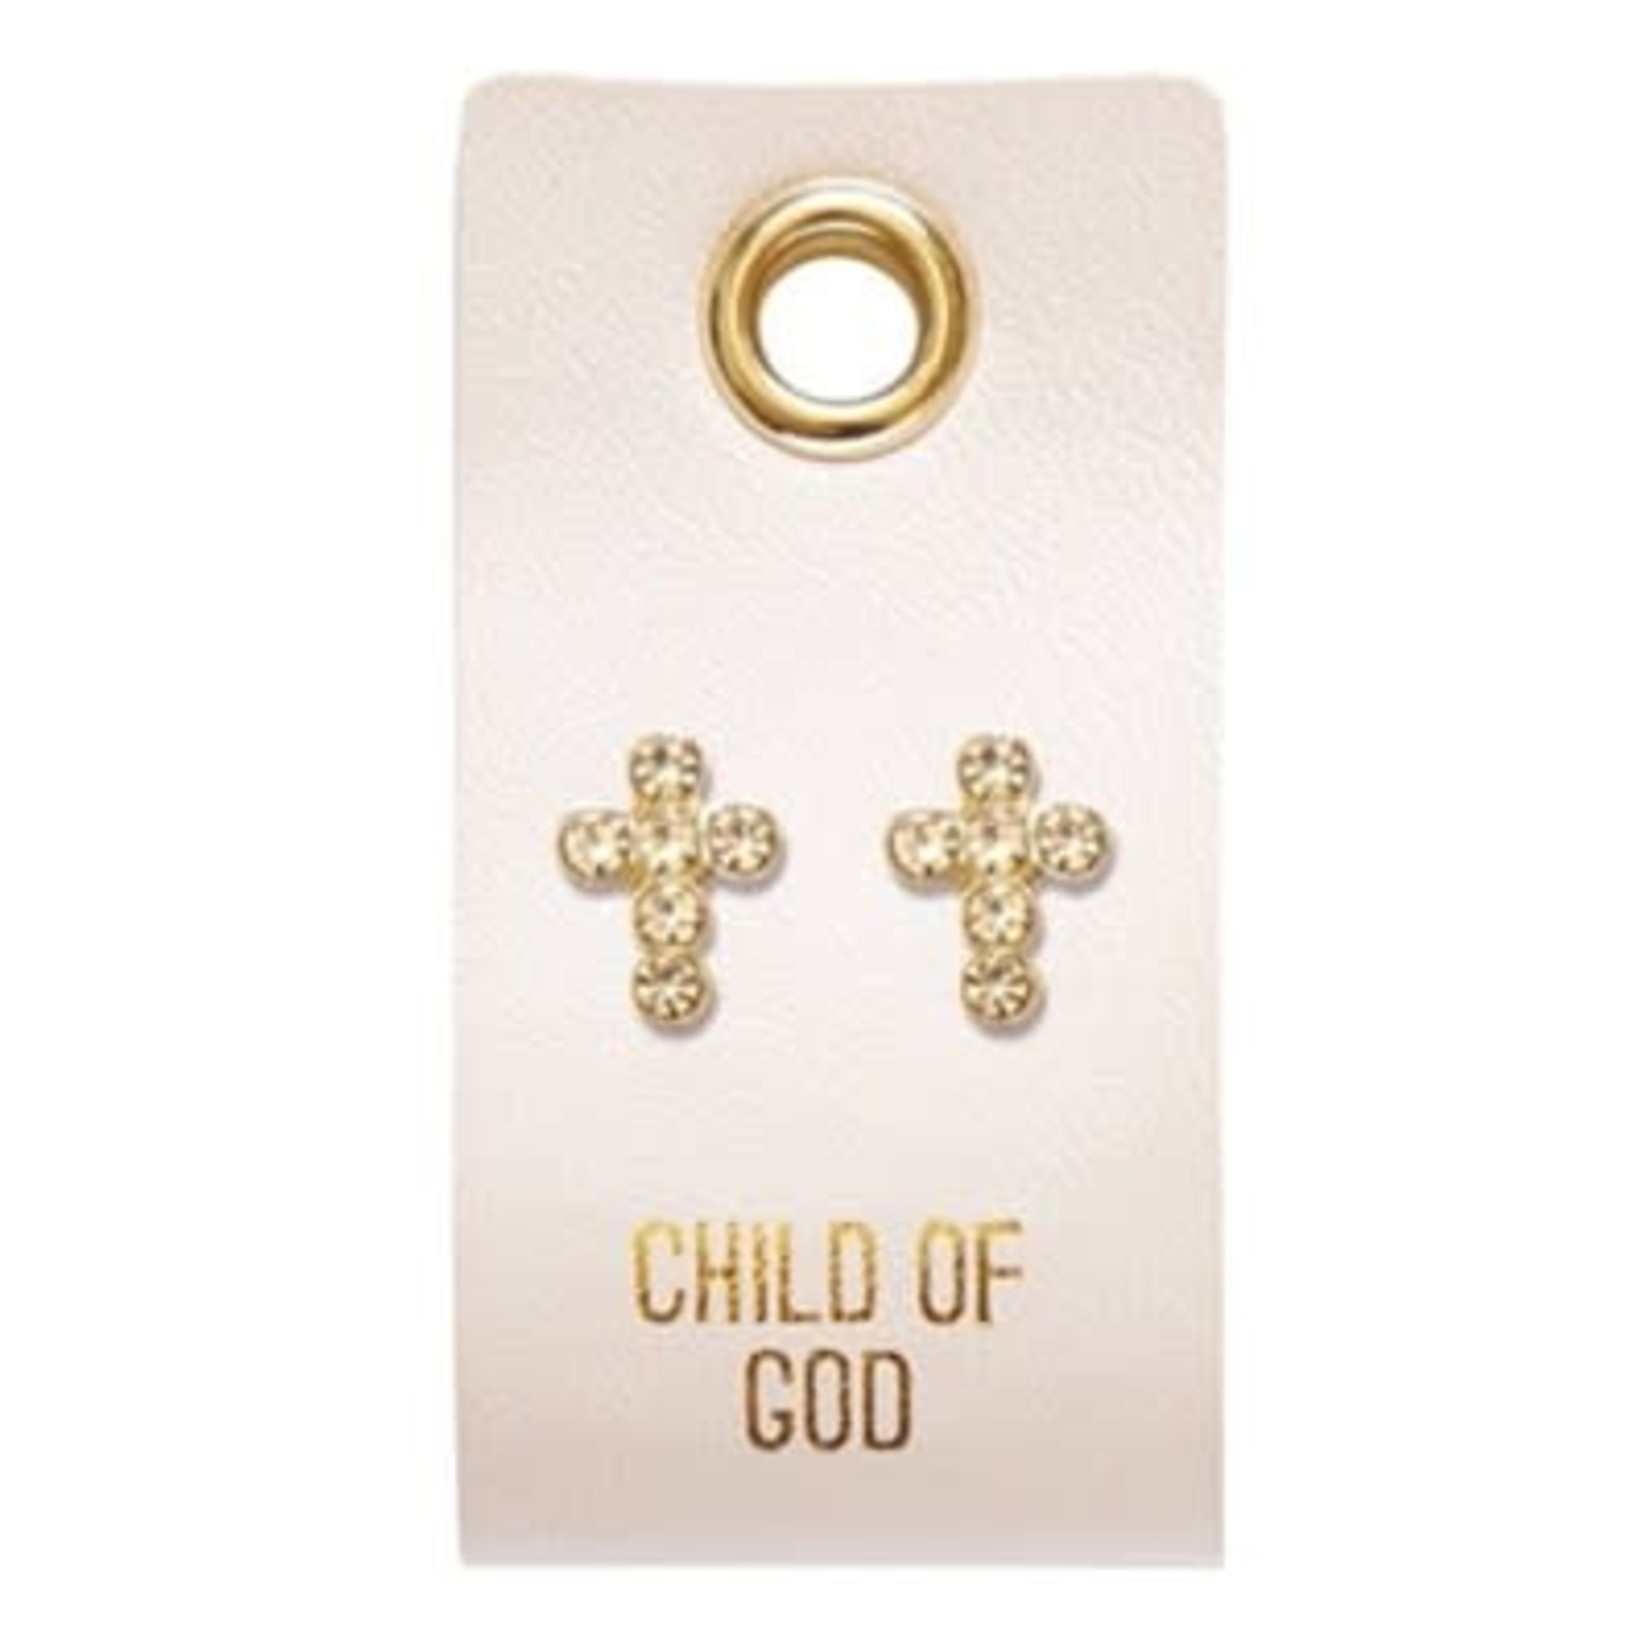 Child of God Cross Earrings